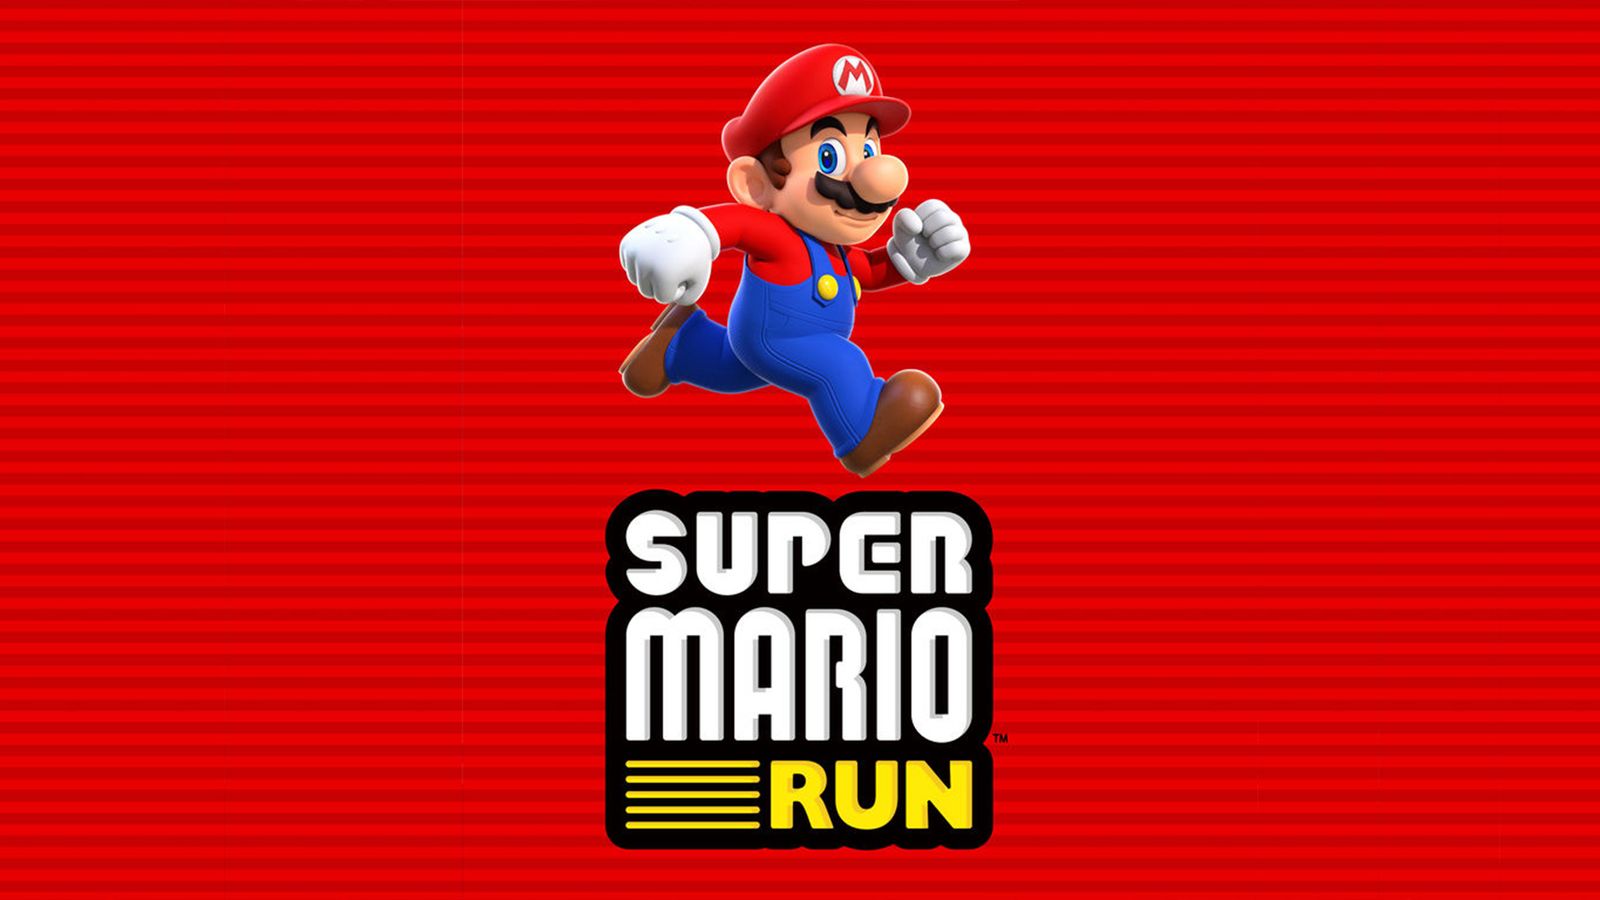 Super Mario Run не е безплатна - цялата игра струва 20 лв. и иска постоянен достъп до интернет